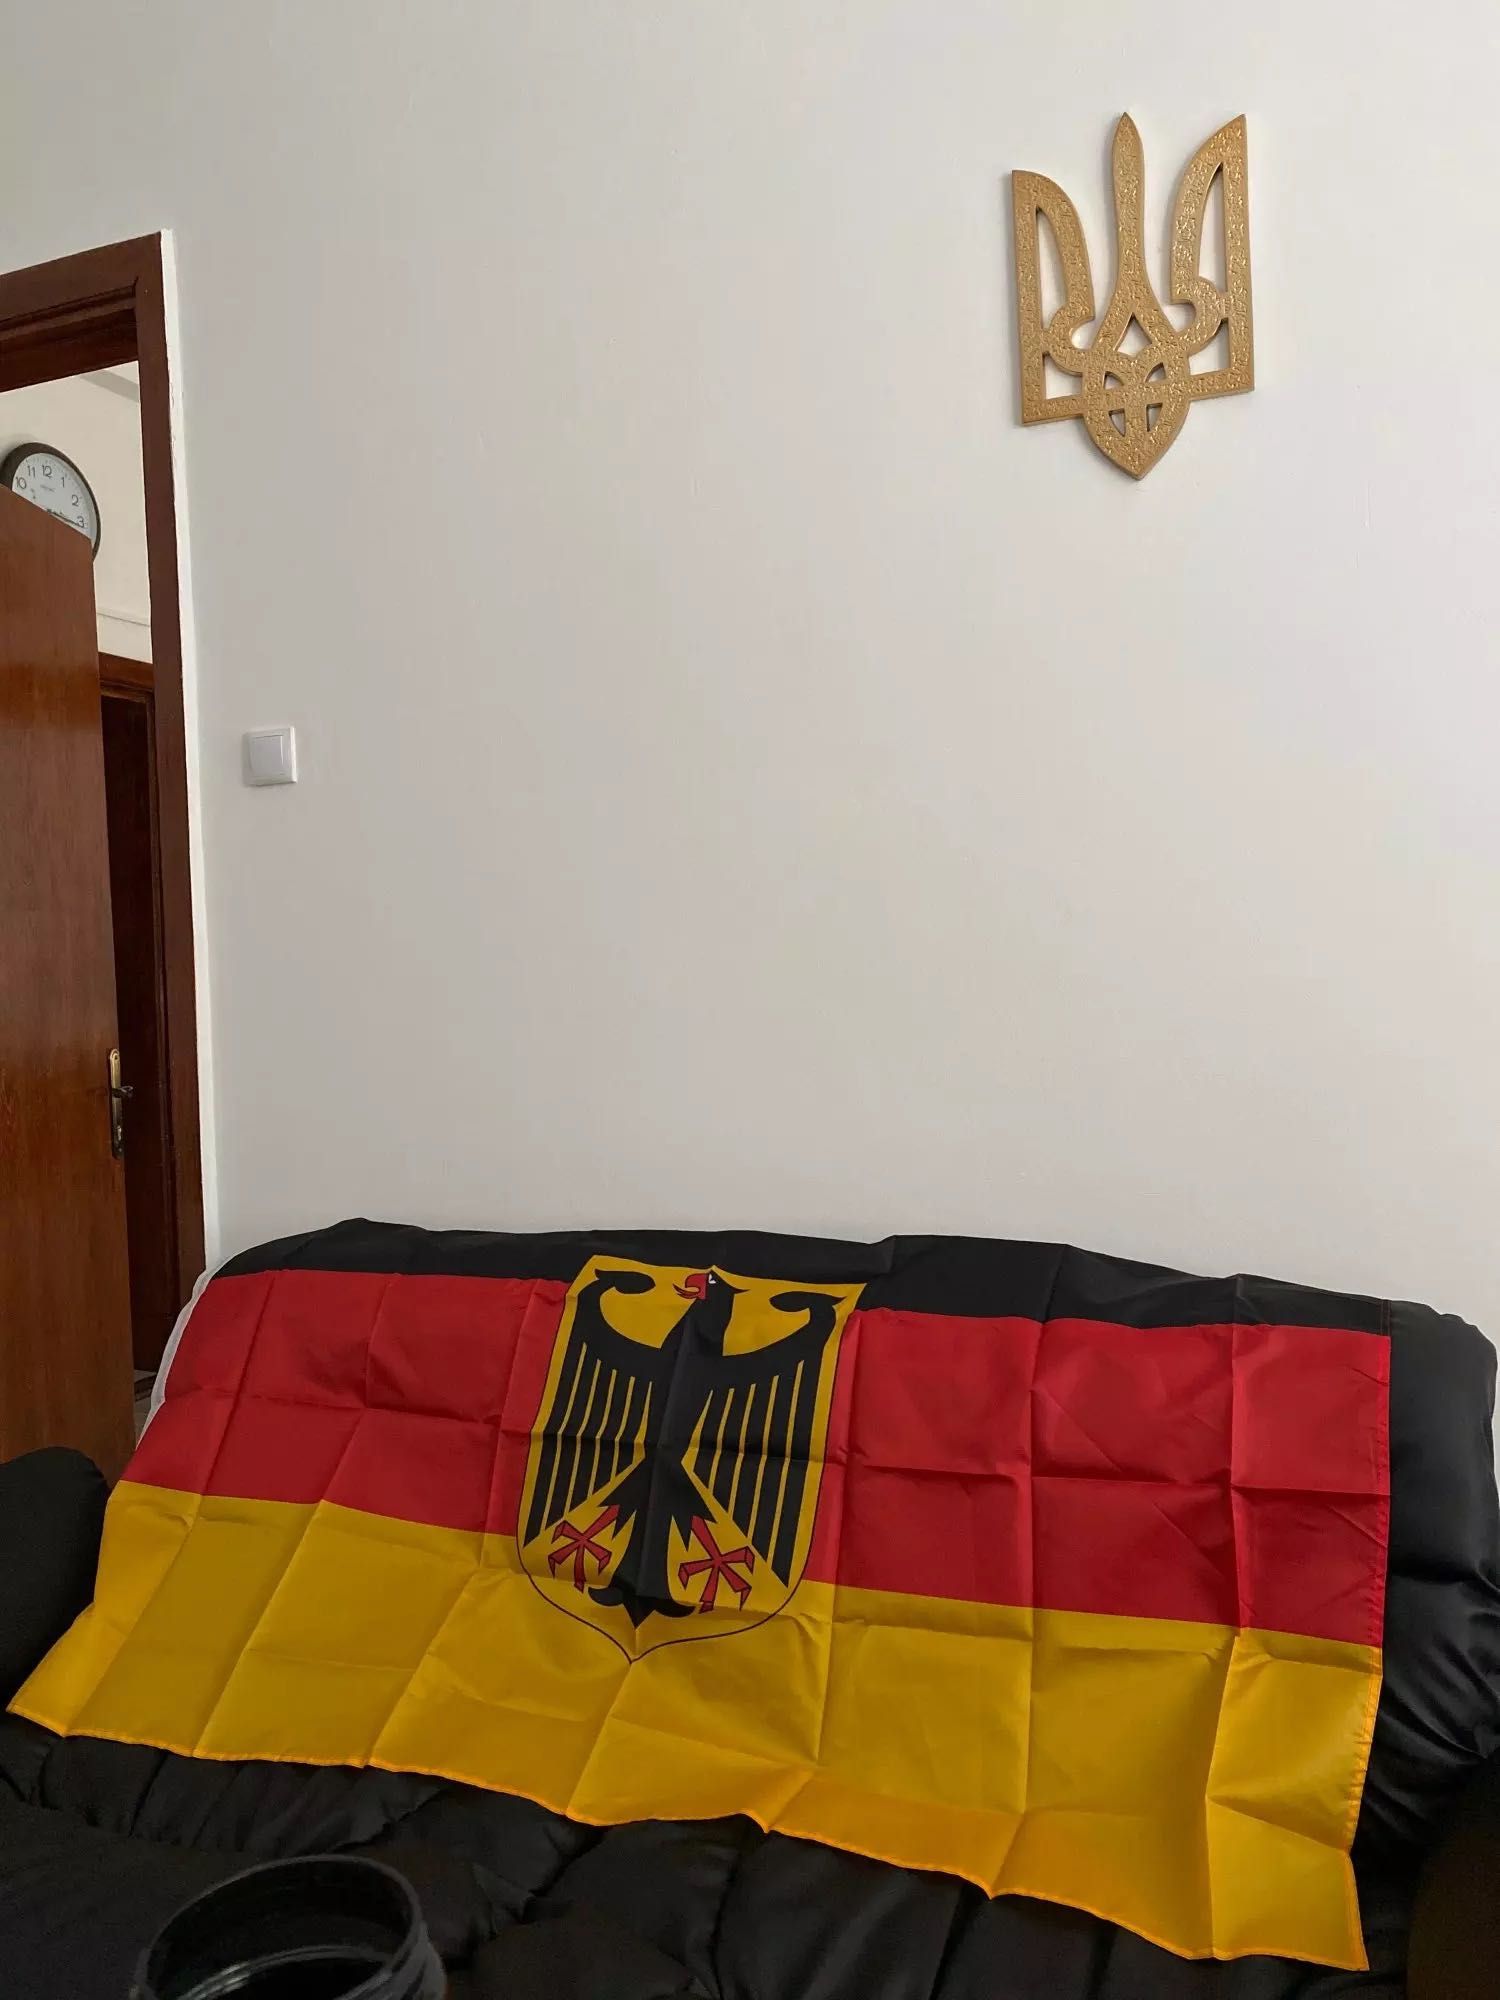 Флаг Германии / прапор Німеччини 150х90